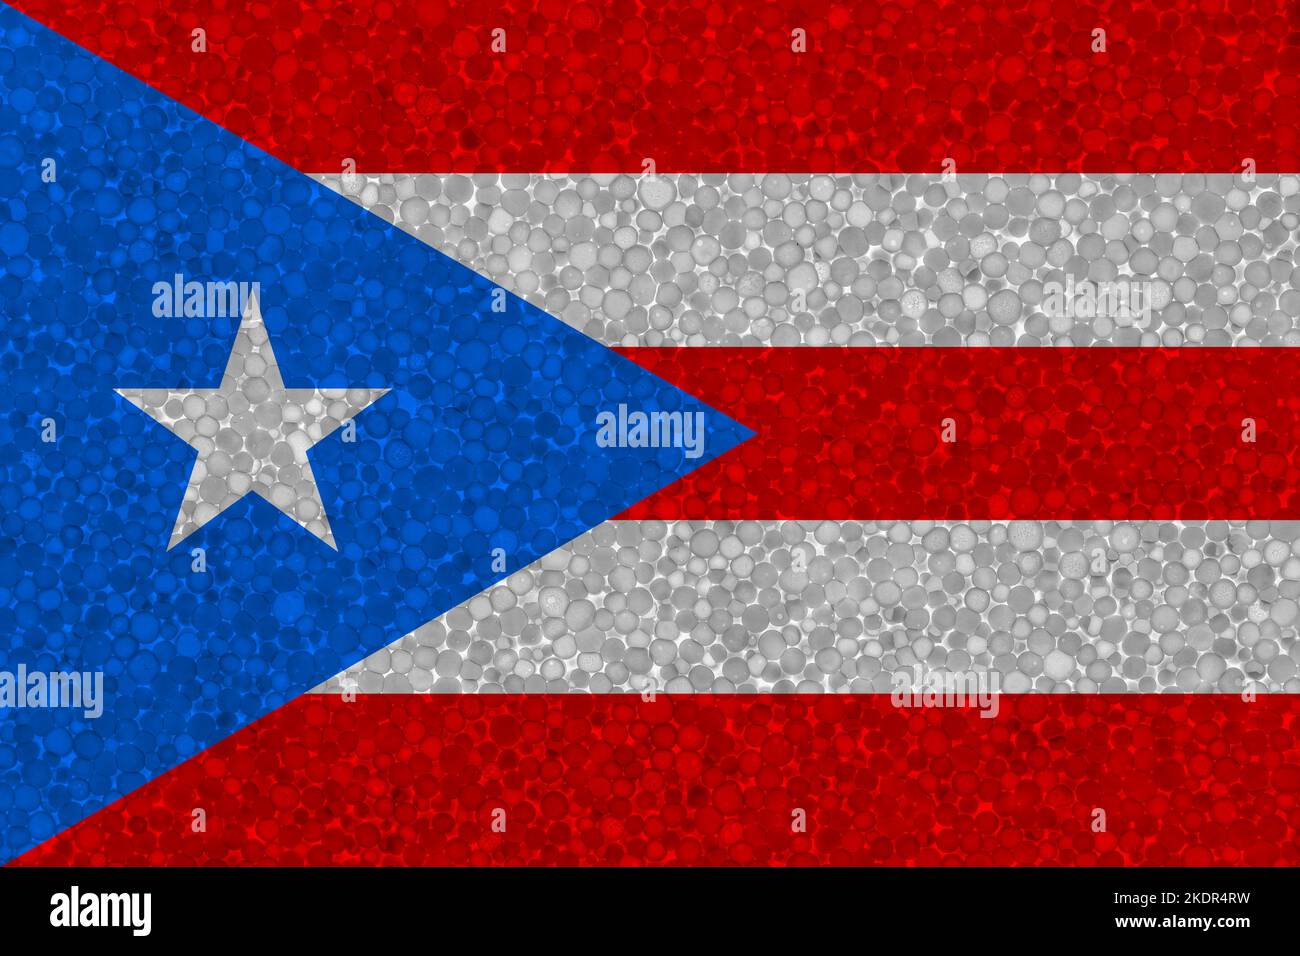 Drapeau de Porto Rico sur la texture styromousse. Drapeau national peint sur la surface de la mousse plastique Banque D'Images